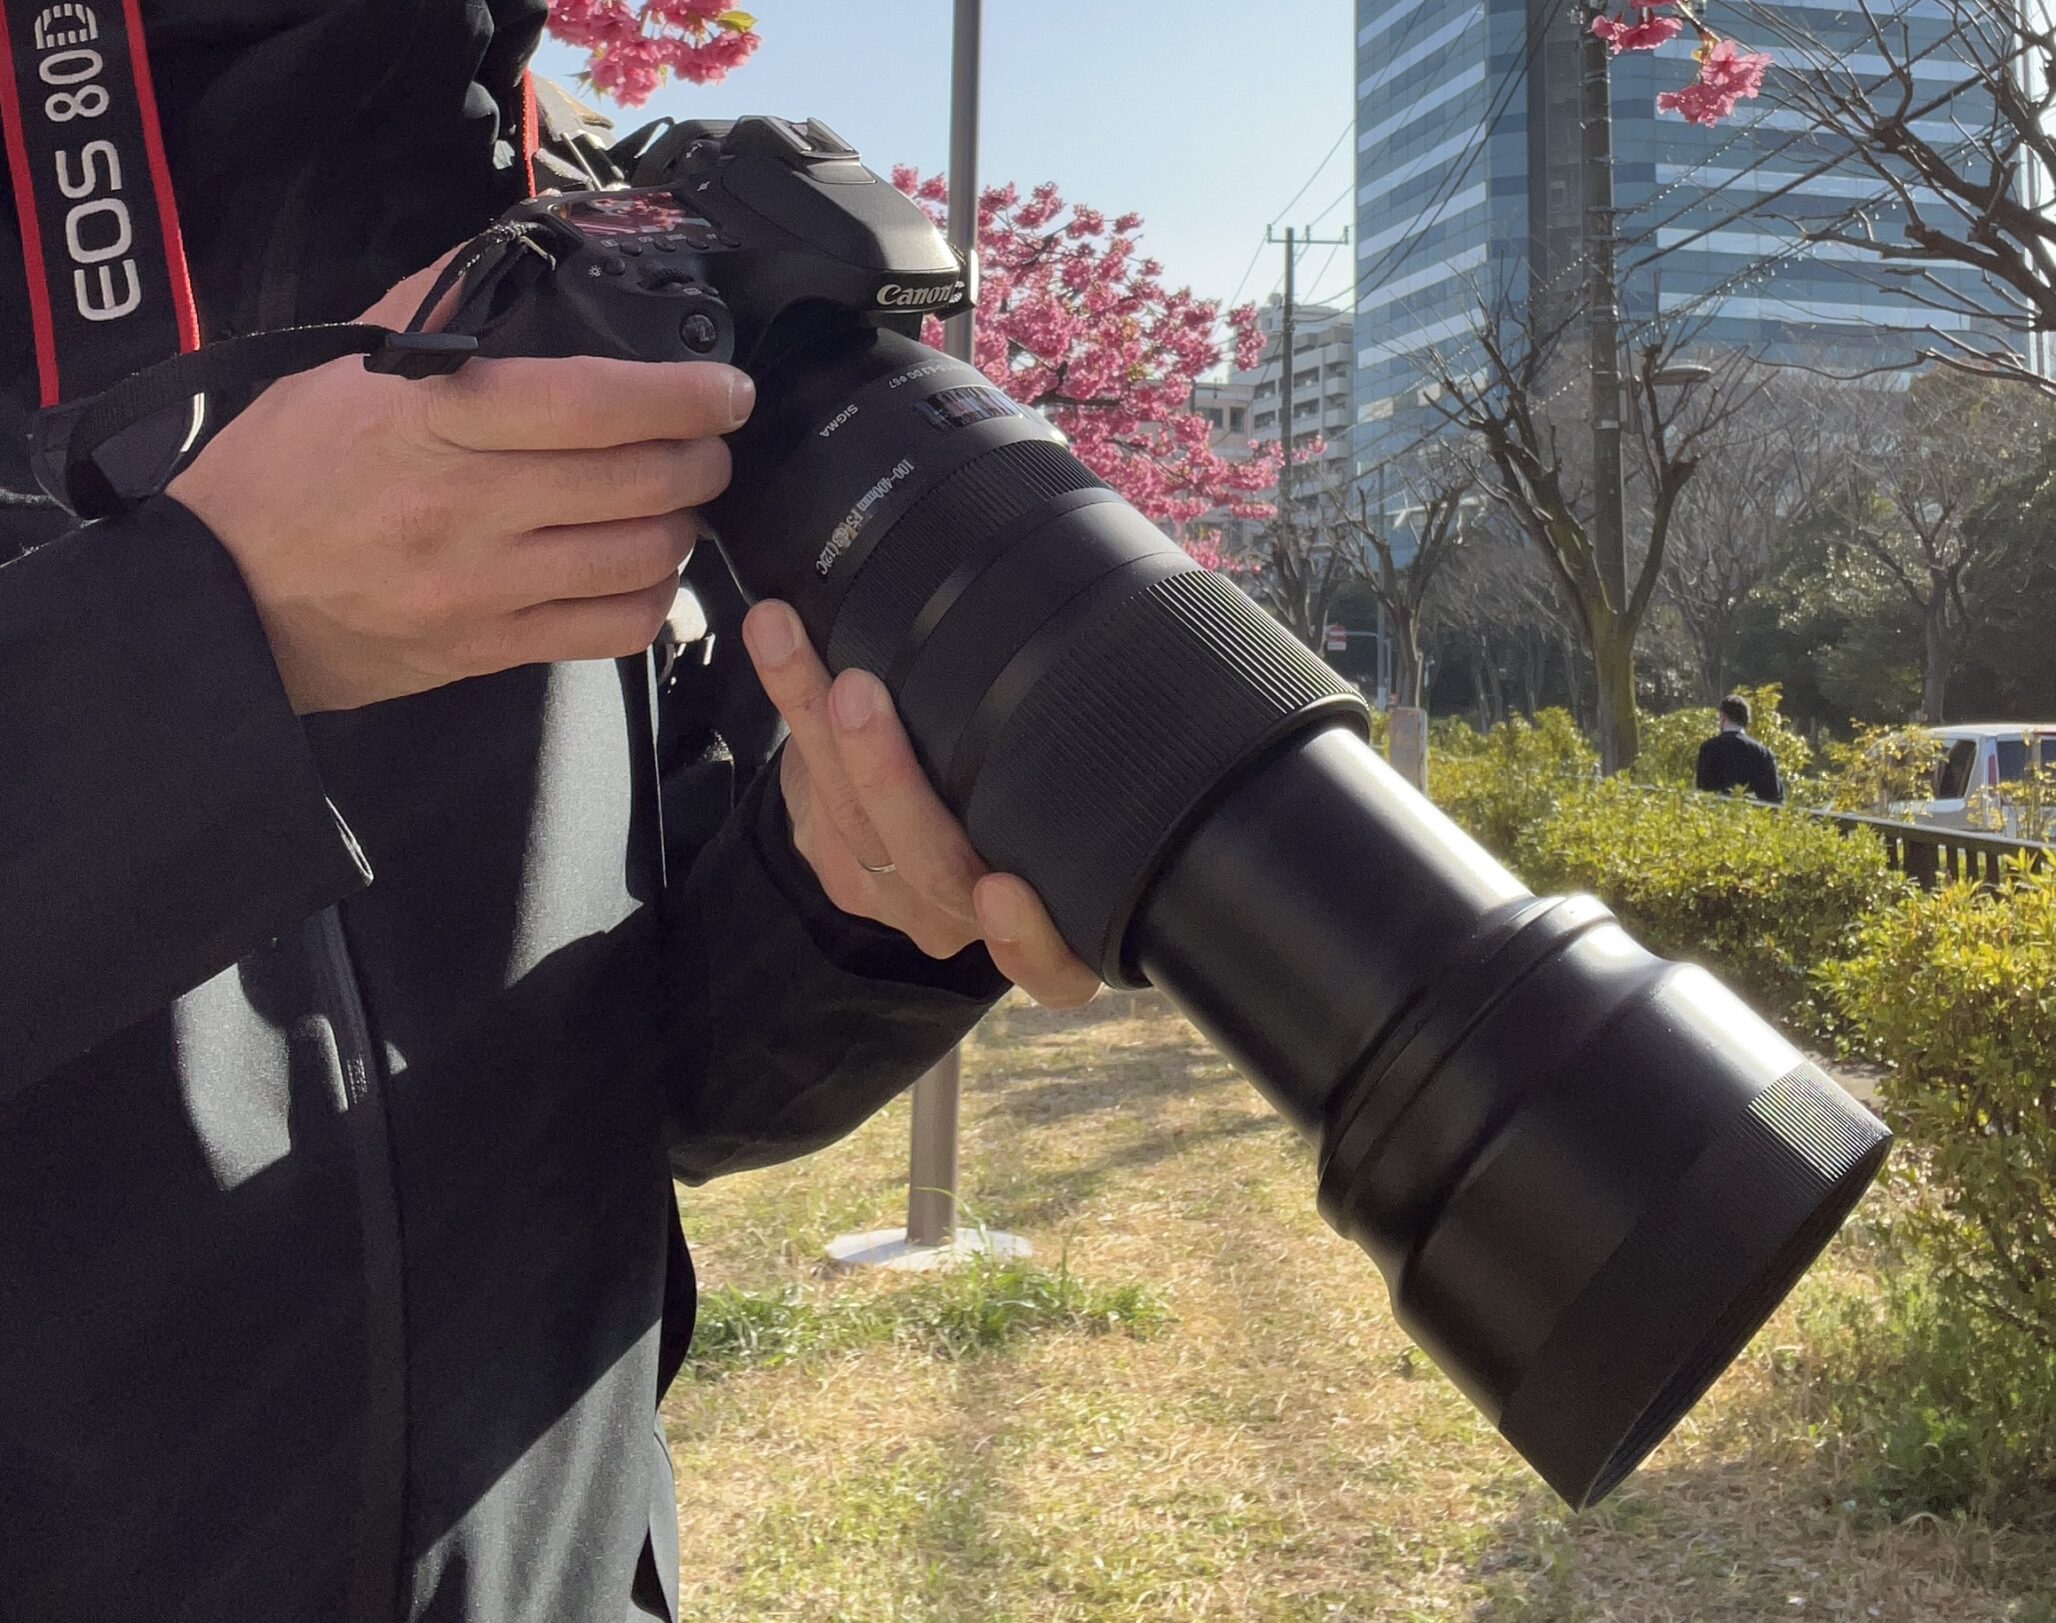 Canon EOS 80Dにタムロン18-400mmとシグマ100-400mmを付け替えて撮り 